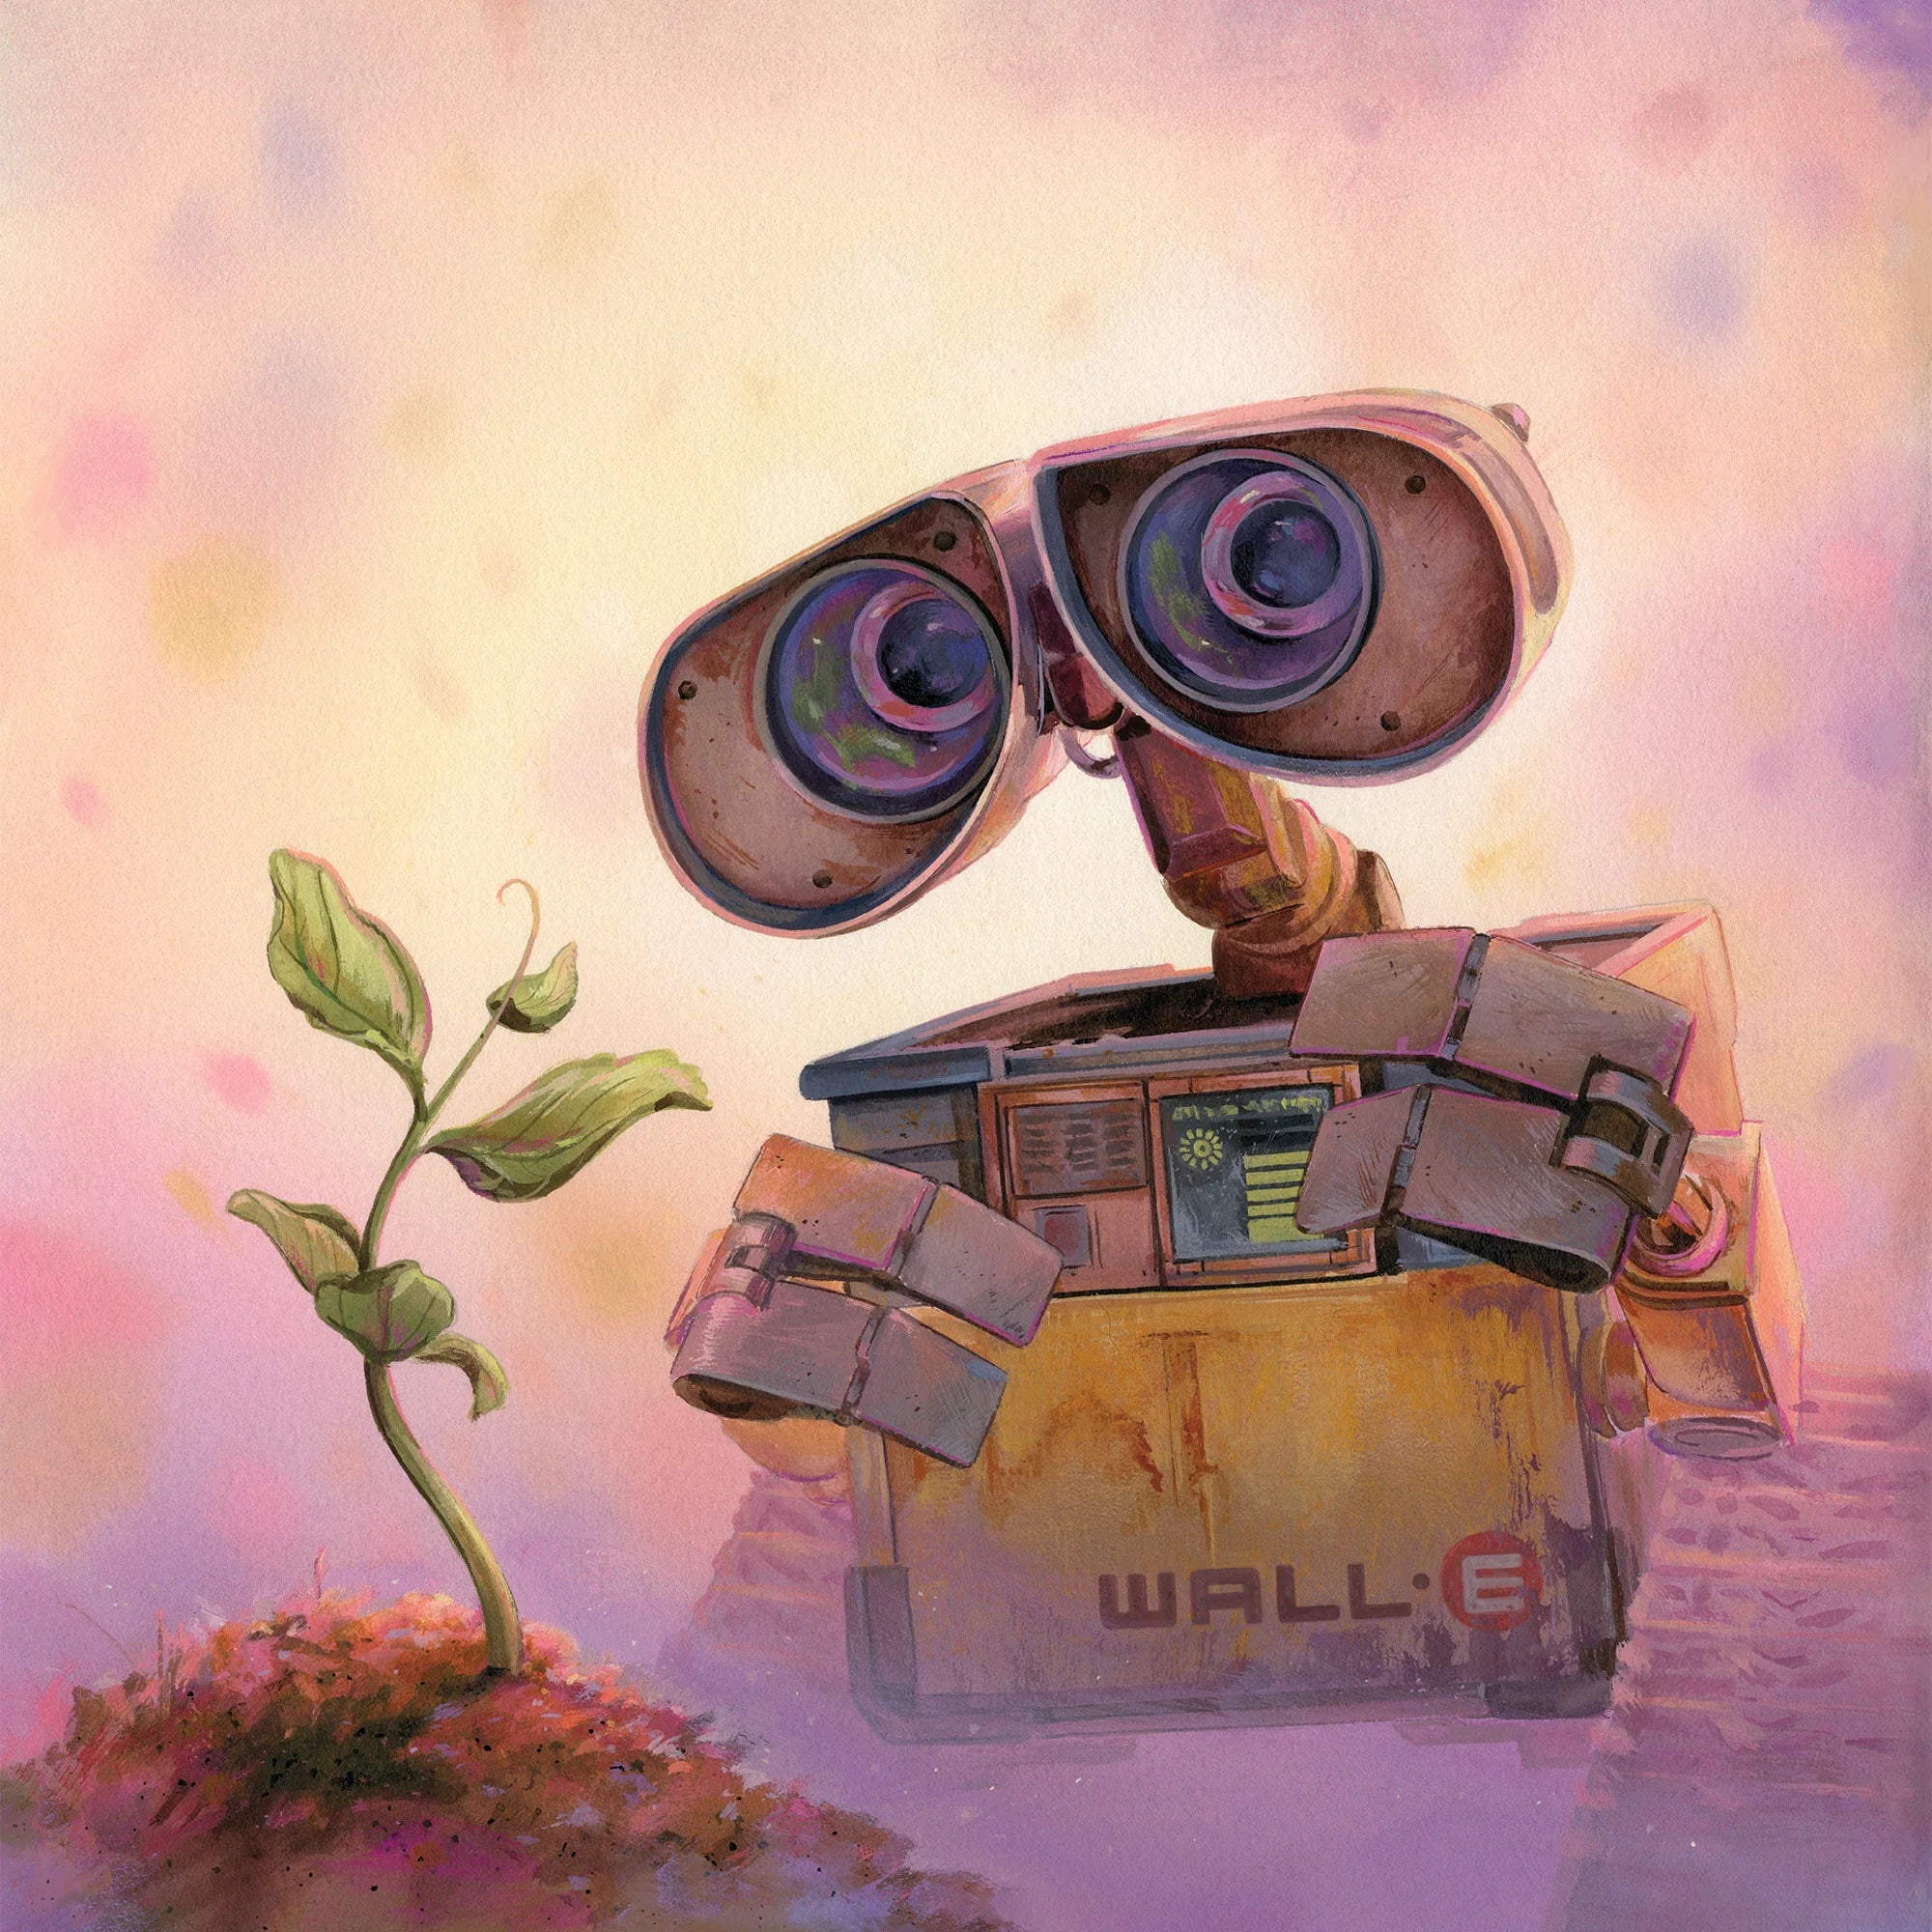 WALL-E (Original Motion Picture Soundtrack) (Eco Vinyl 2 LP)